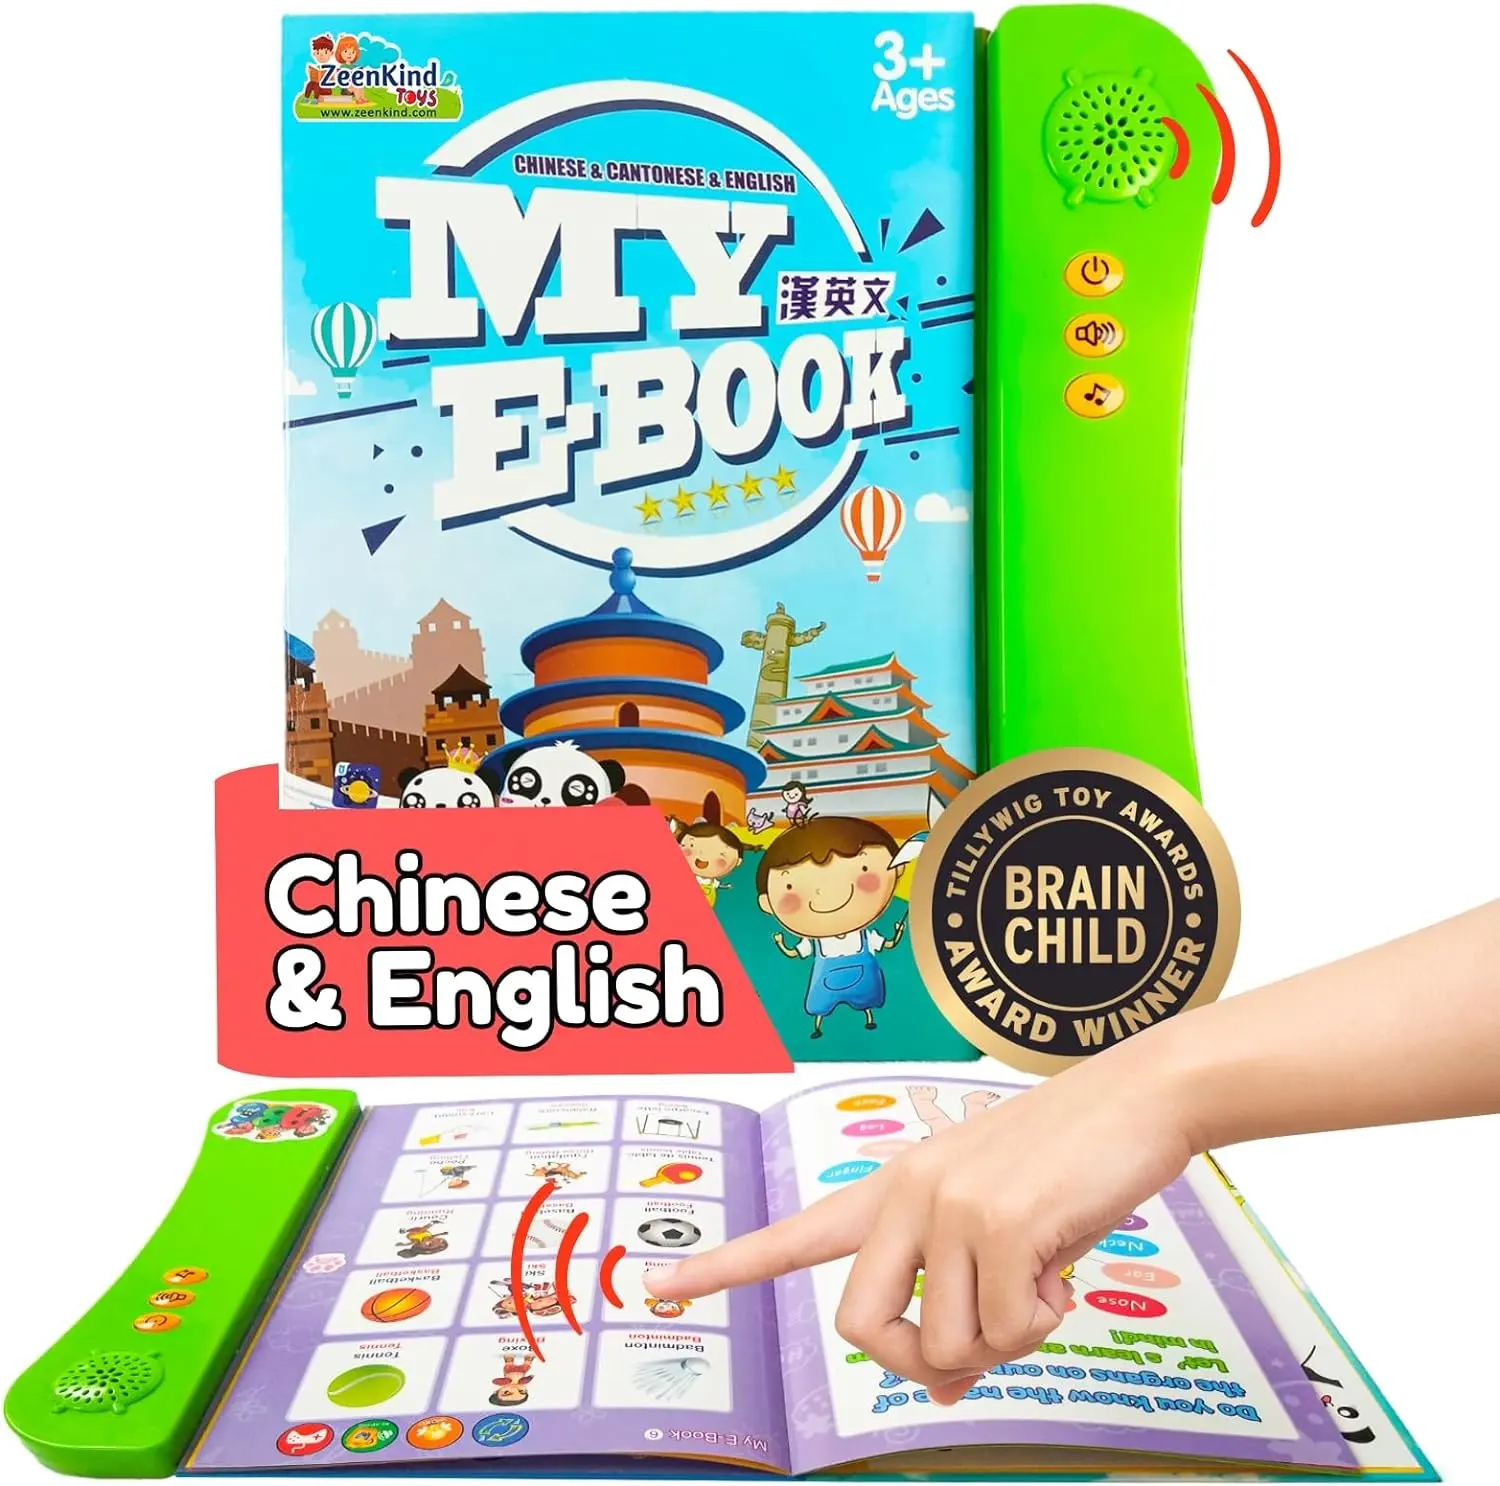 चीनी अंग्रेजी द्विभाषी बेबी बुक्स सीखें, मंदारिन, पिनयिन, कैंटोनीज अंग्रेजी सीखने के लिए इंटरैक्टिव ऑडियो बुक्स